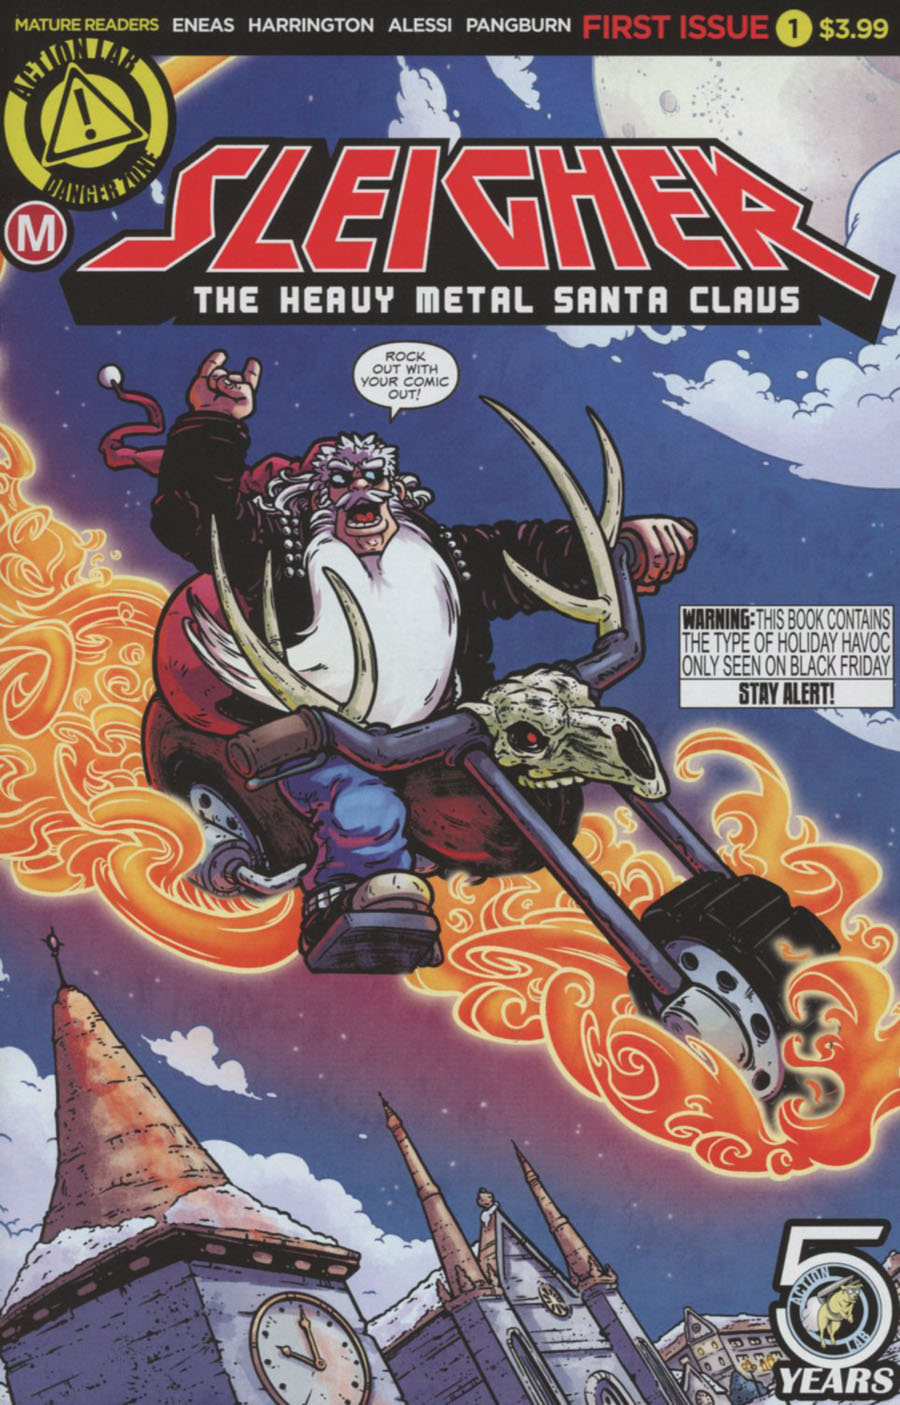 Sleigher Heavy Metal Santa Claus #1 Cover A Regular Axus Eneas Cover